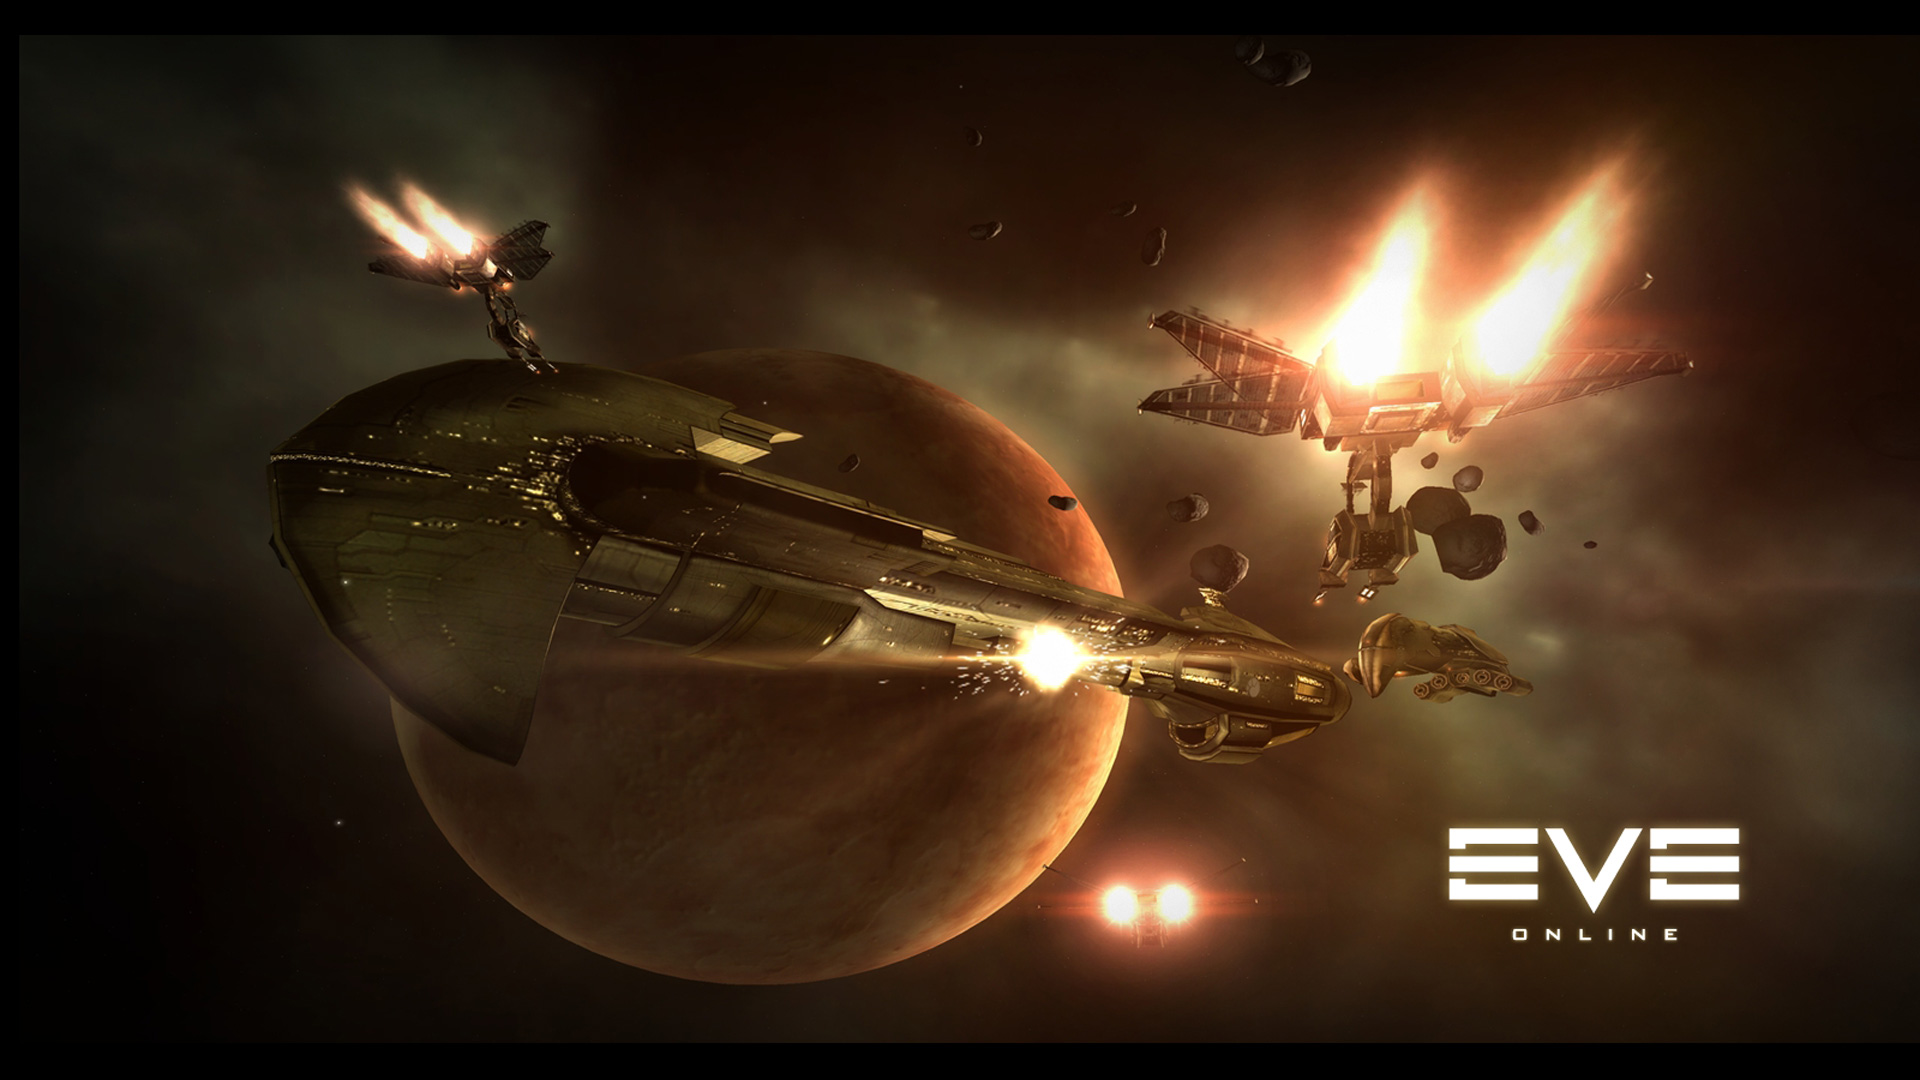 Eve Online Wallpaper In